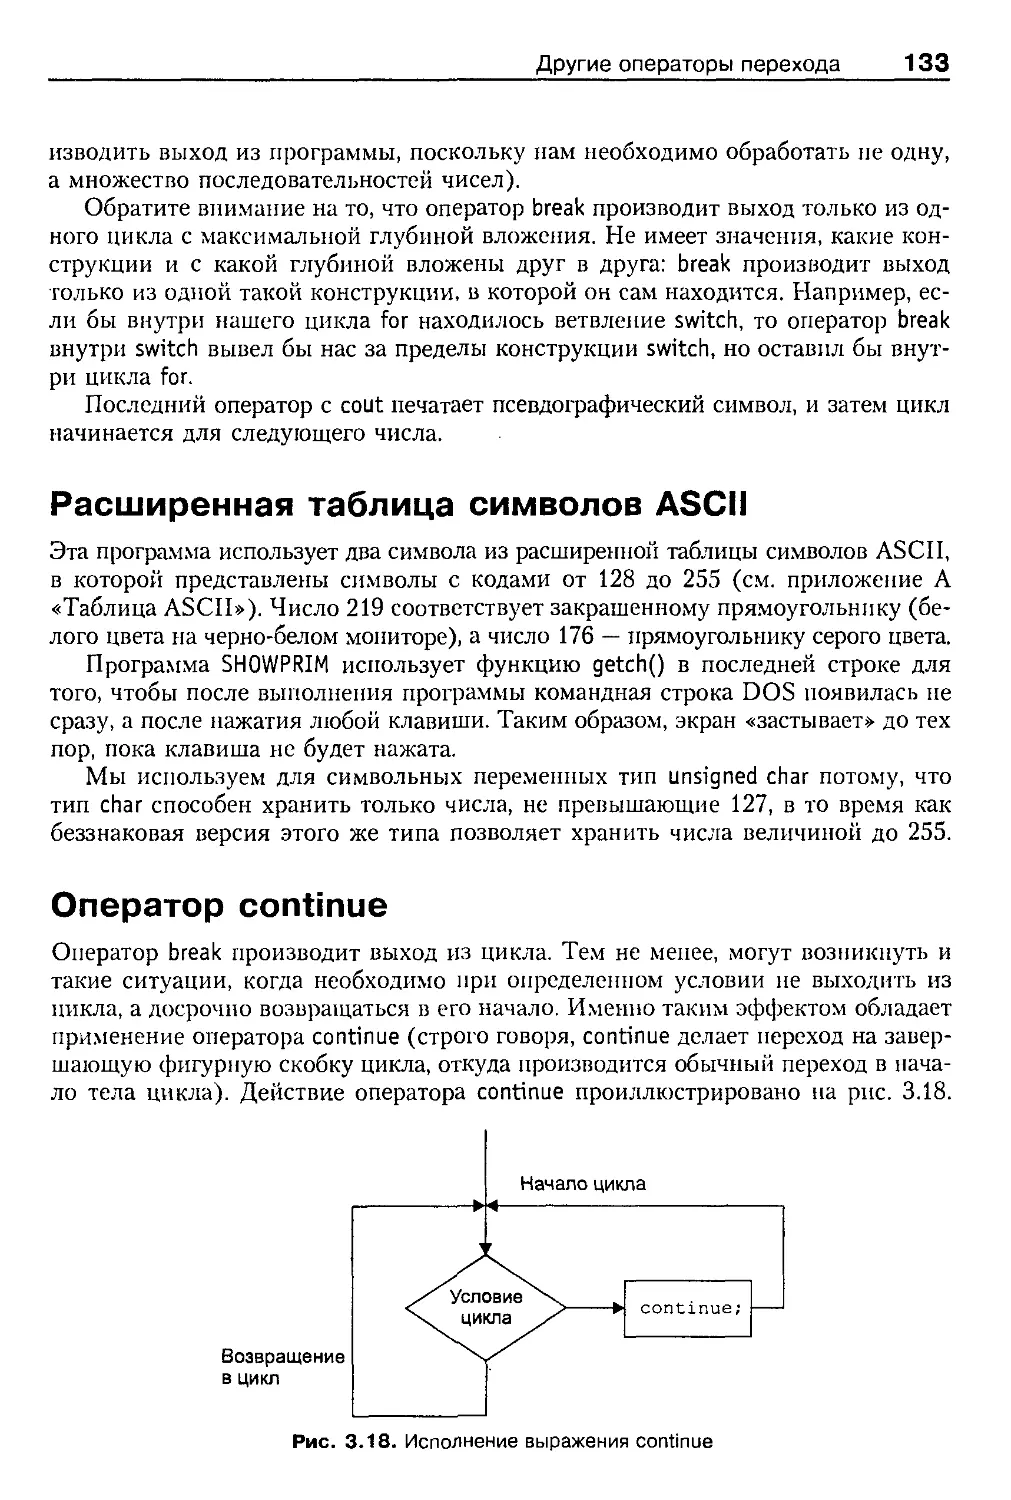 Расширенная таблица символов ASCII
Оператор continue